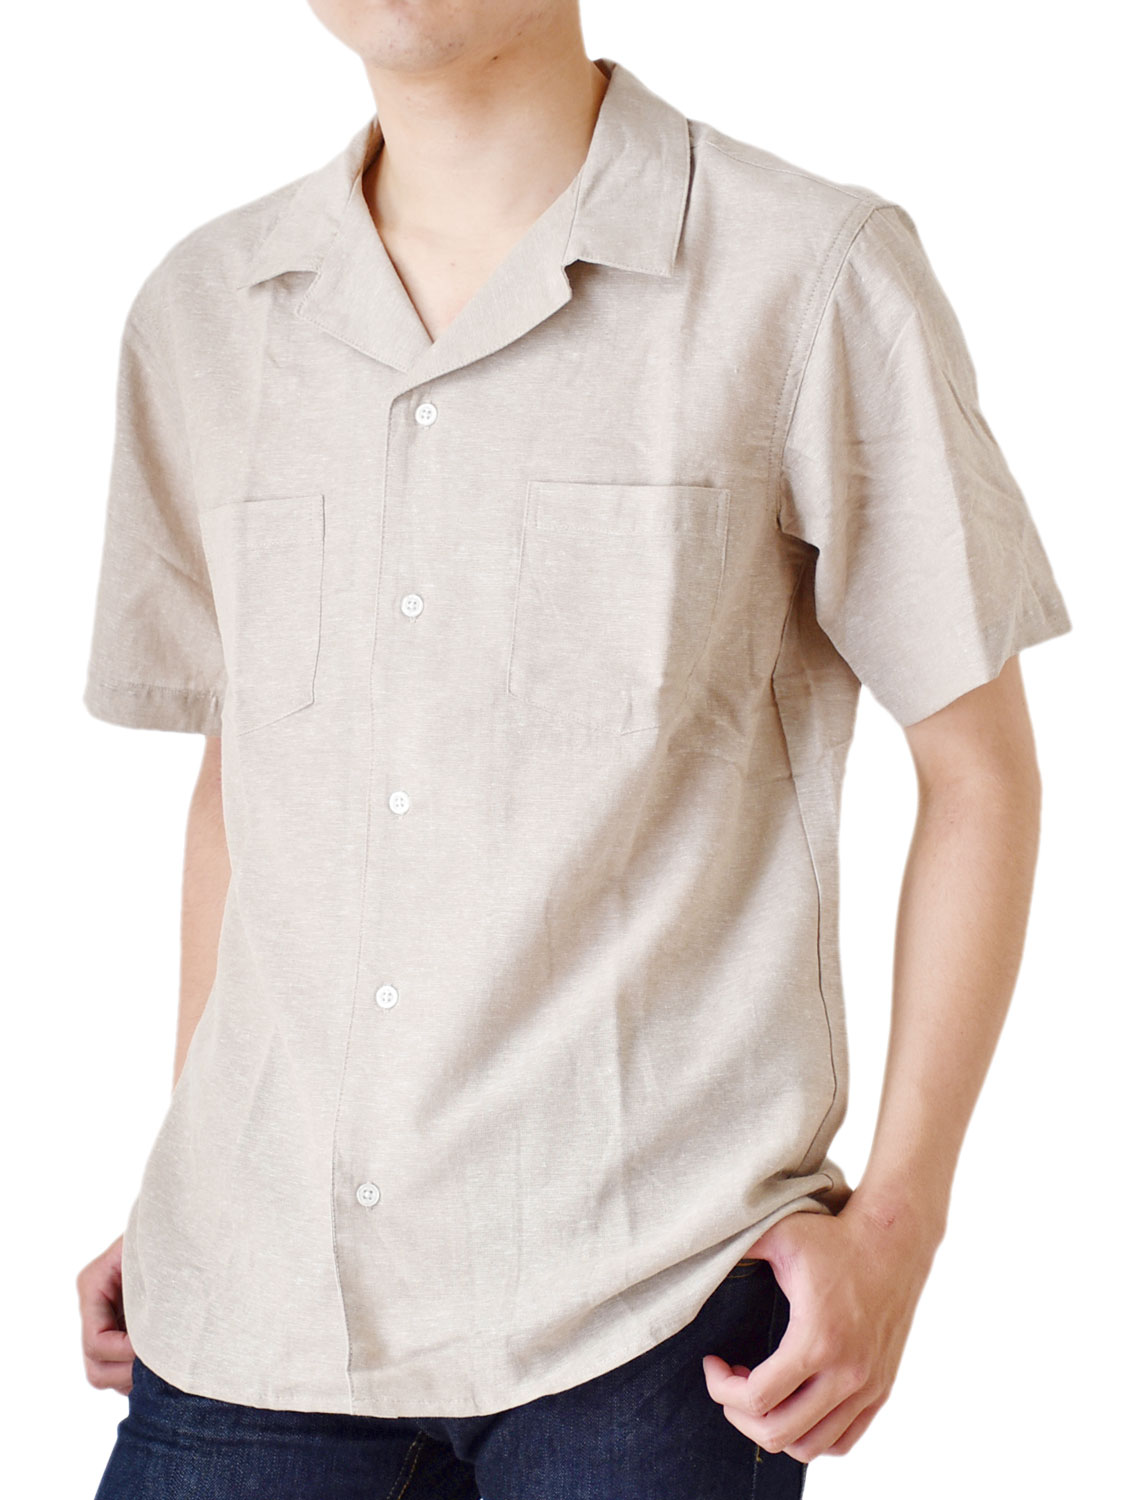 開襟シャツ 半袖 メンズ オープンカラーシャツ リネンブレンド 綿麻 送料無料 通販Y